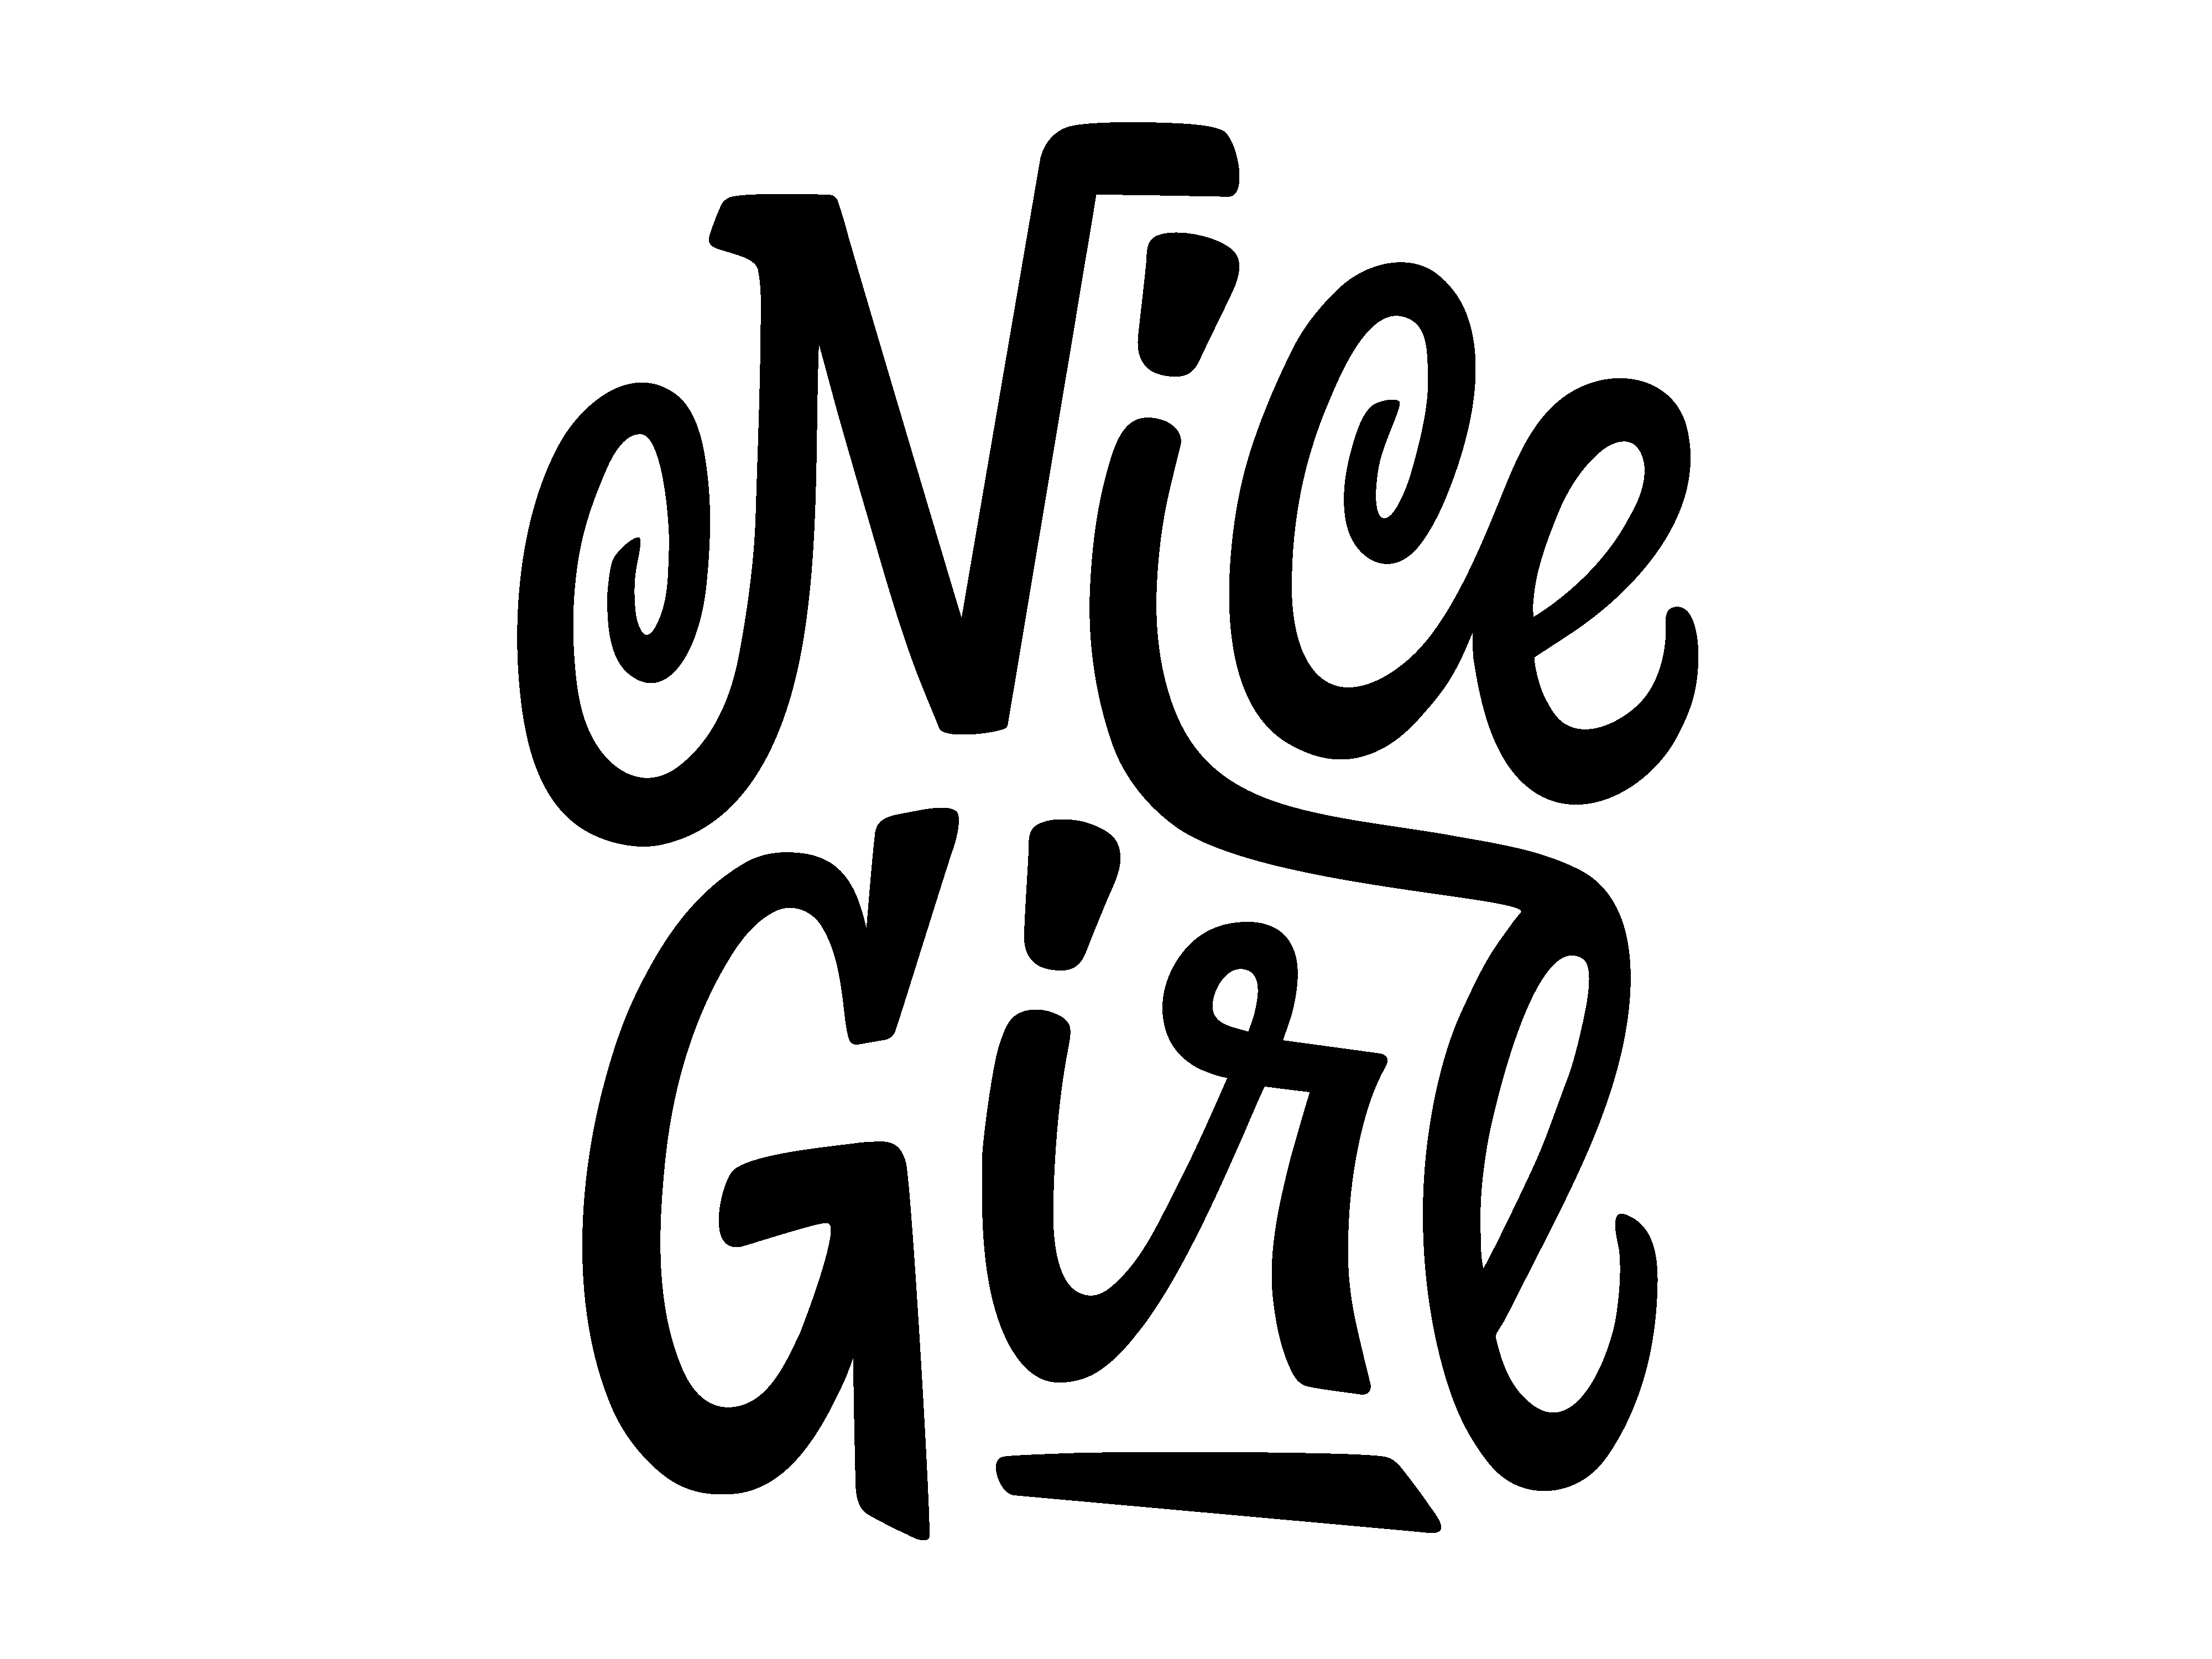 Girl lettering